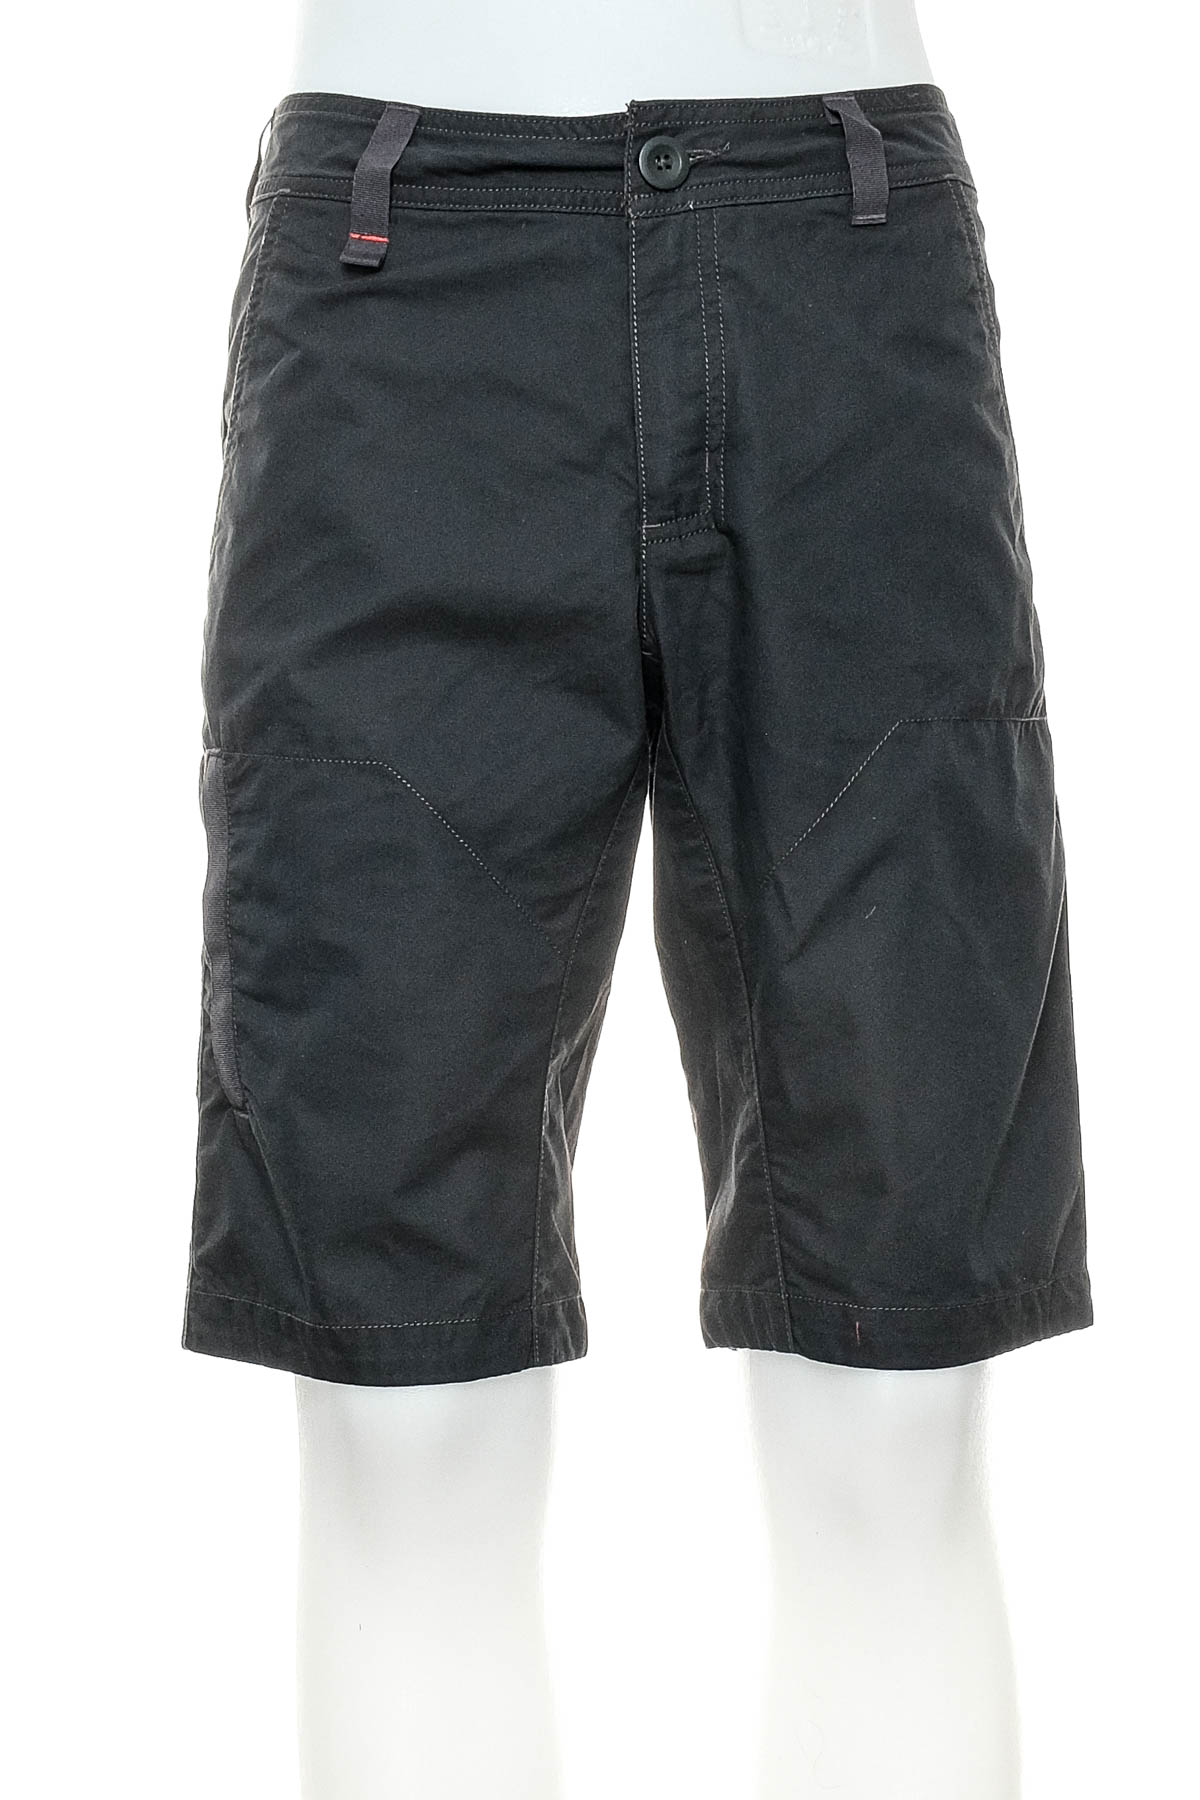 Men's shorts - Quechua - 0